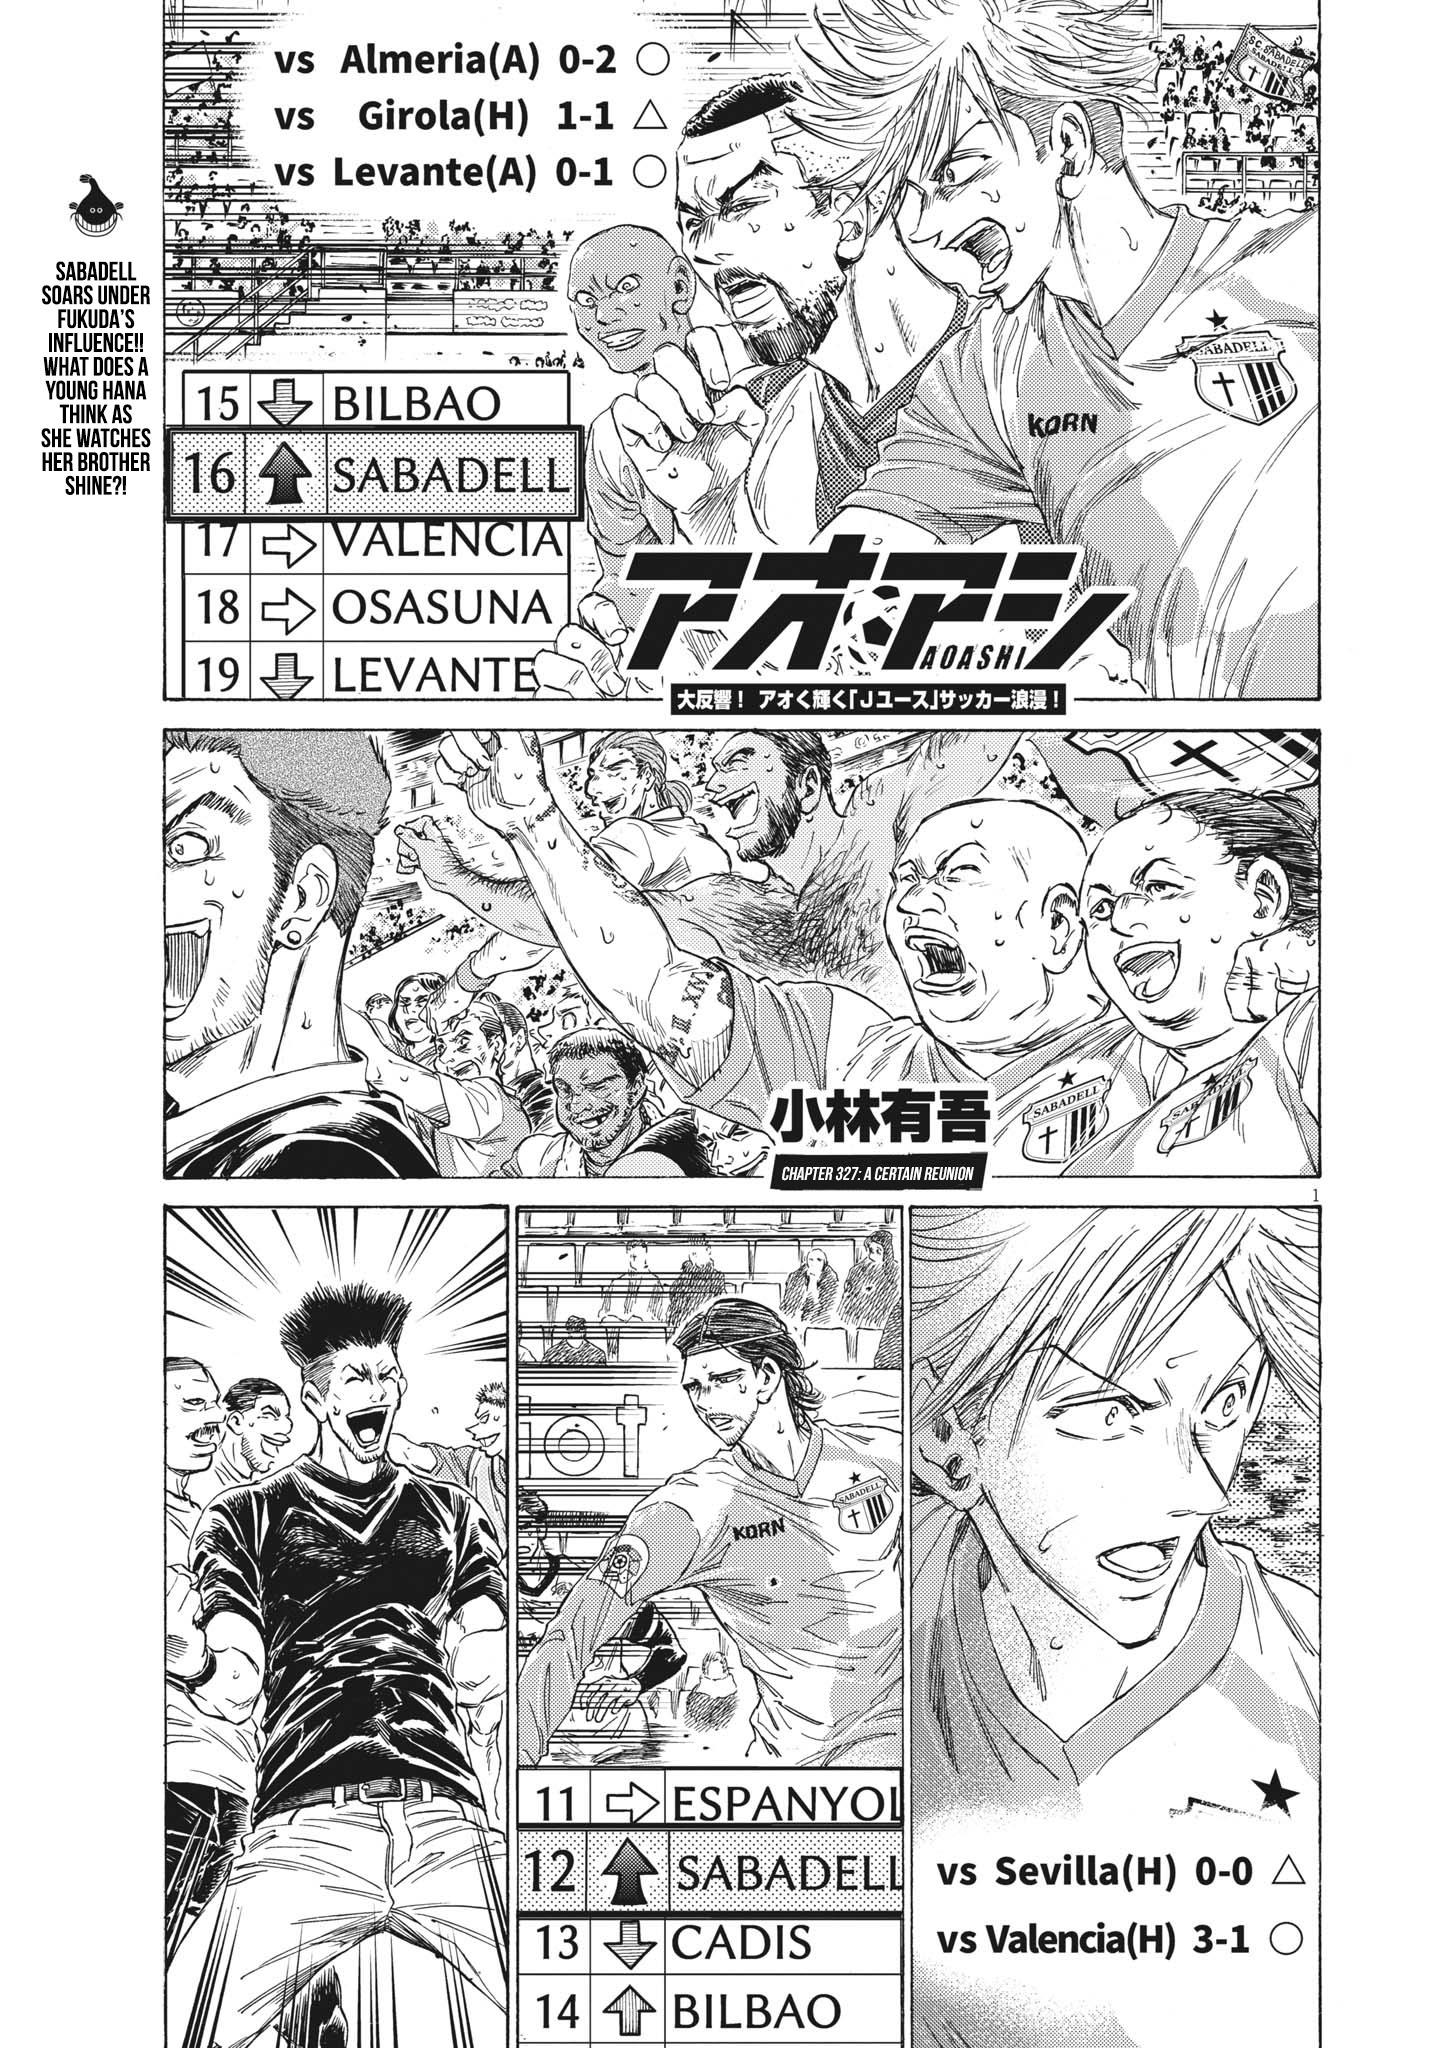 Ao Ashi, Chapter 350 - Ao Ashi Manga Online